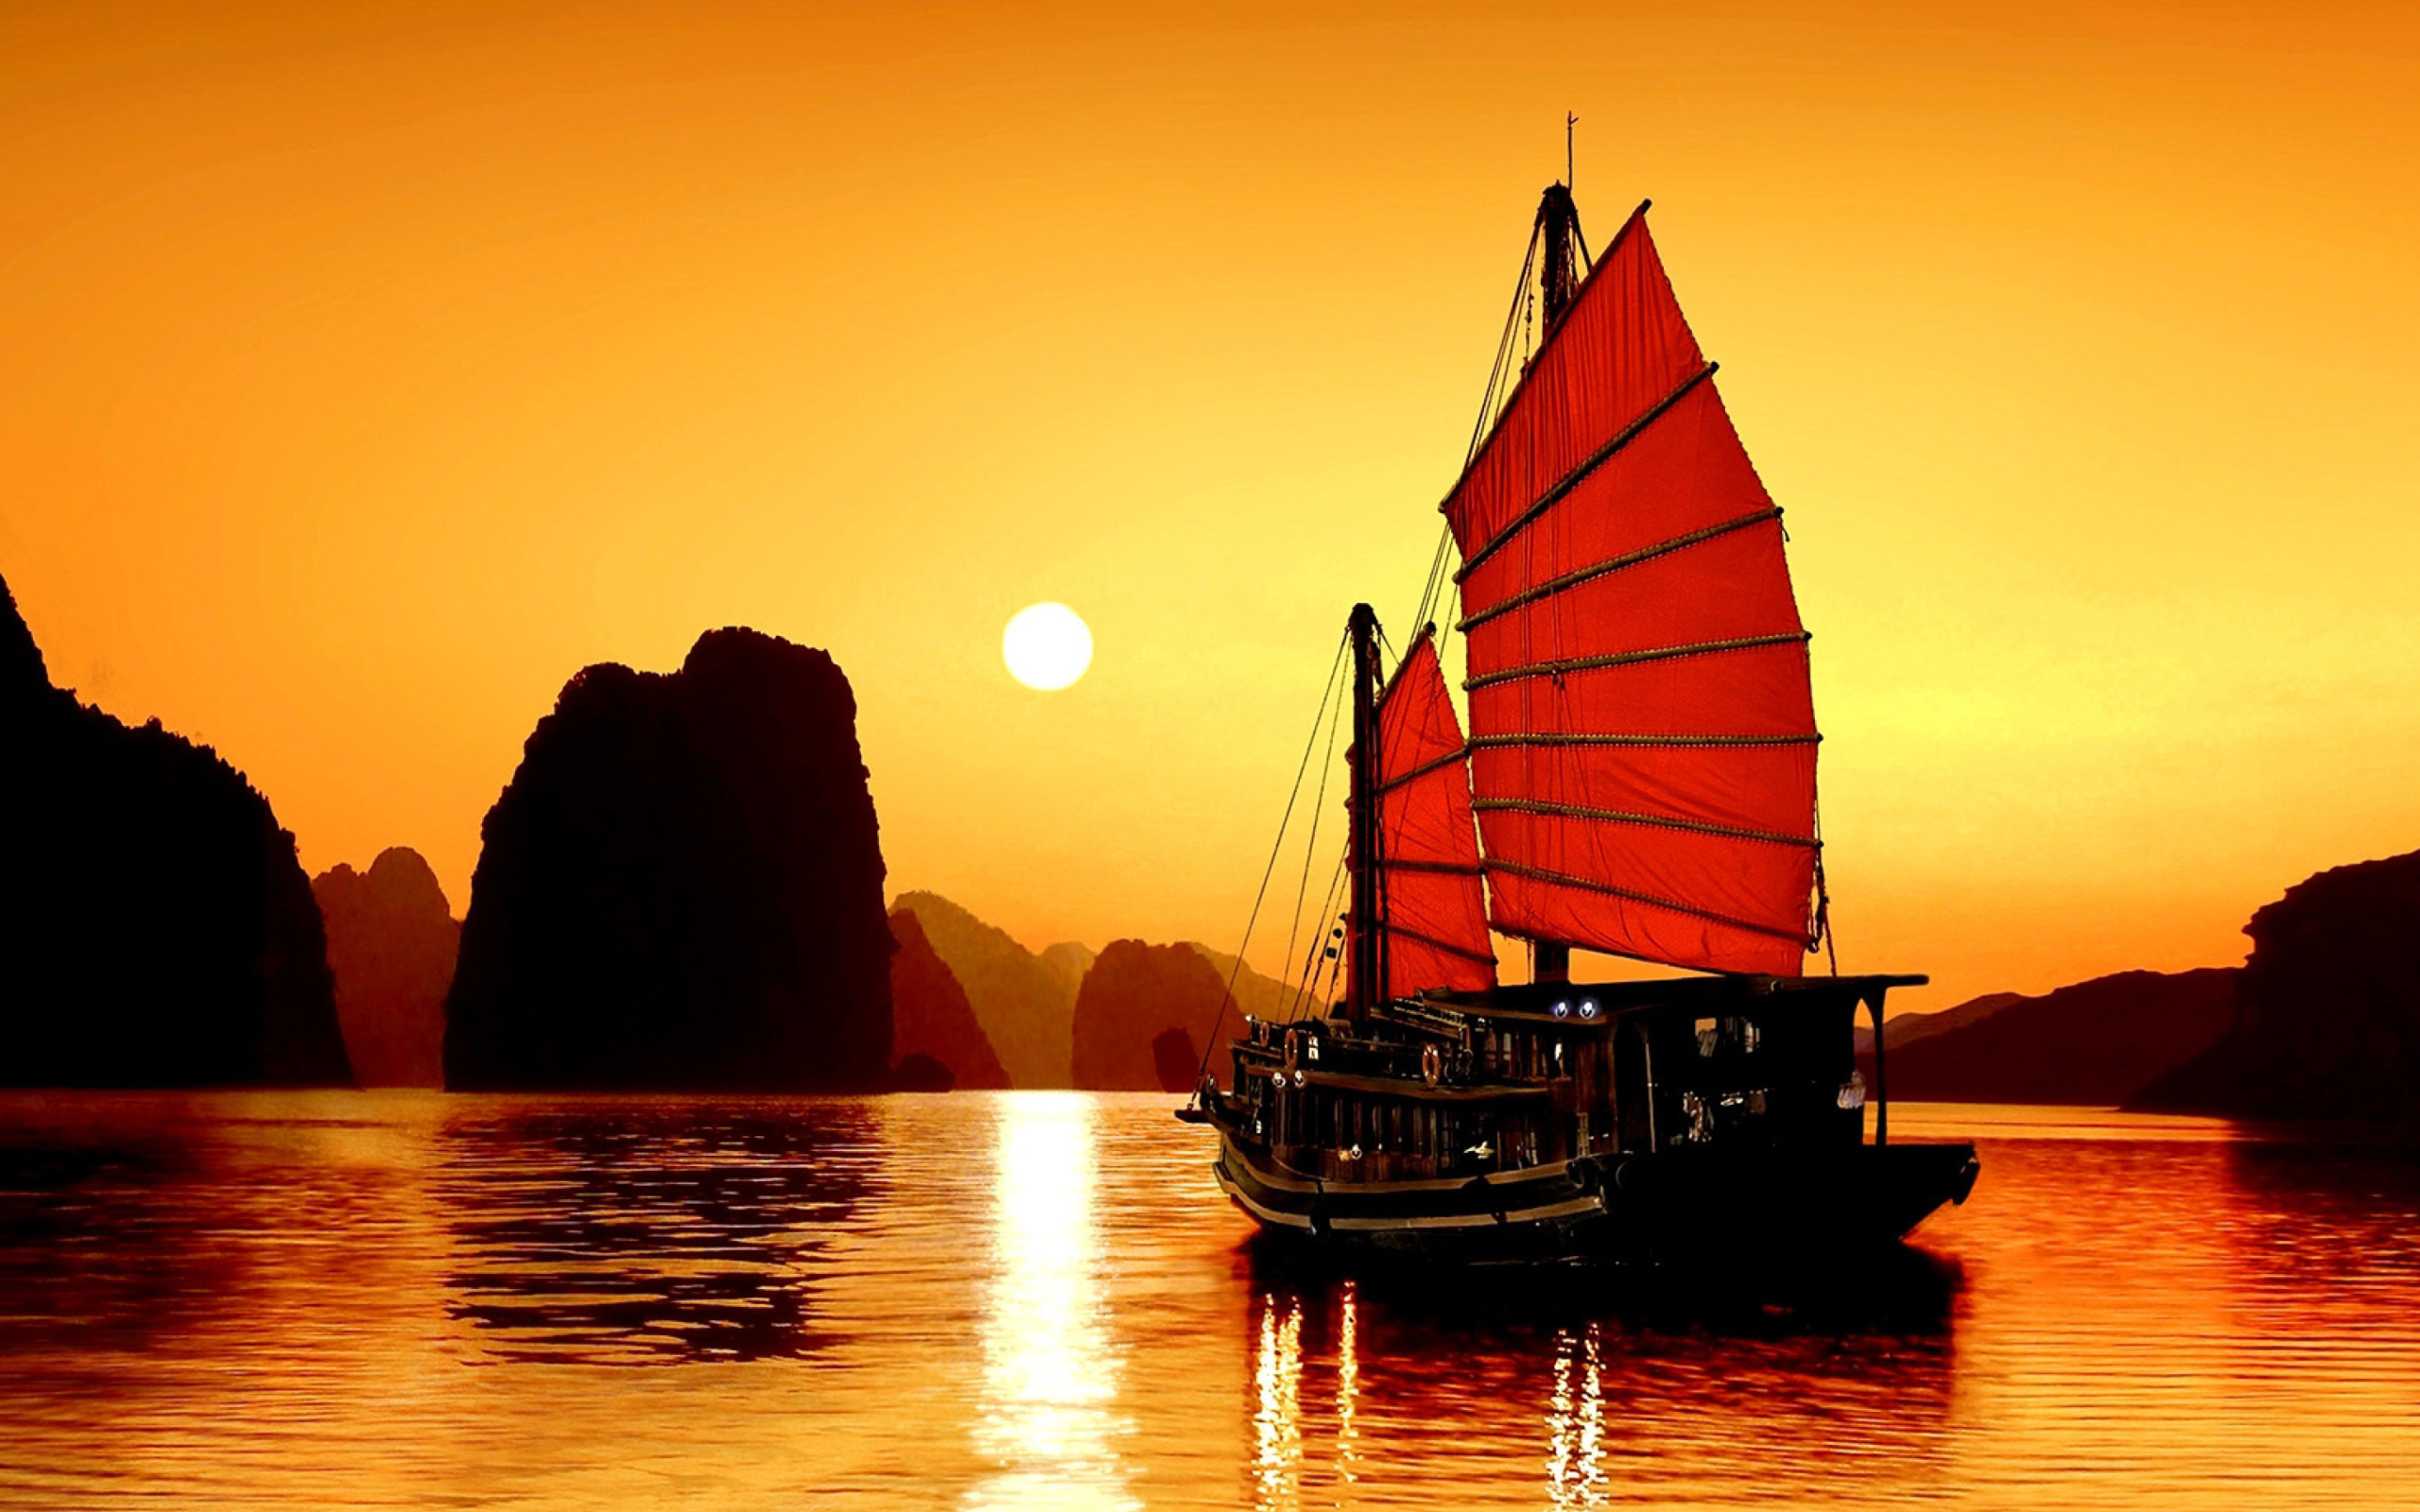 Обои Halong Bay, Vietnama in Sunset 2560x1600